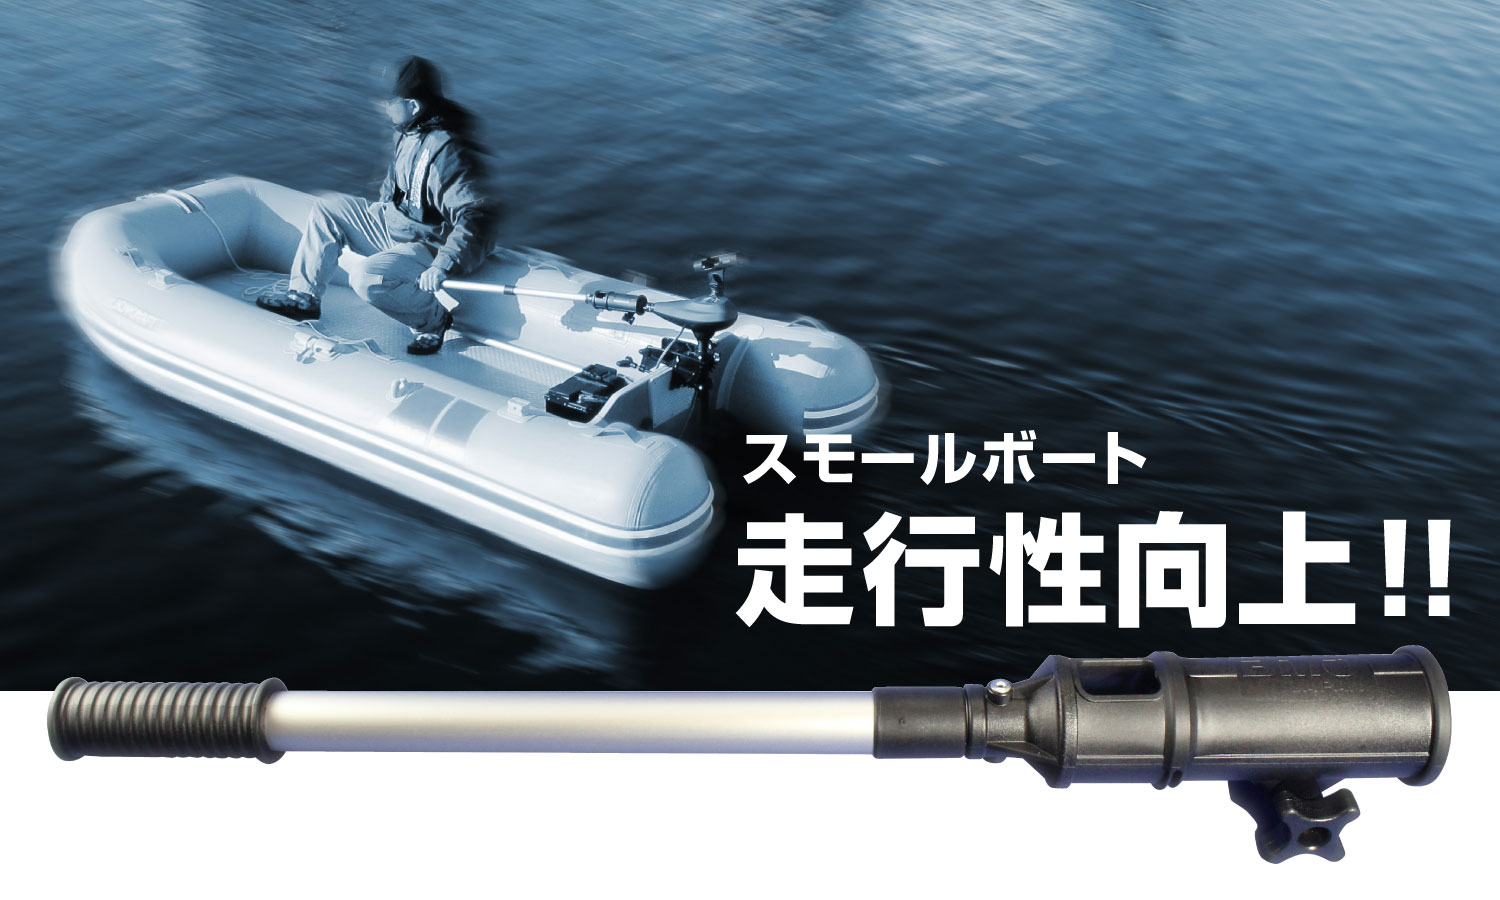 C16225BMO_エクステンションハンドルを使用すればスモールボート、インフレータブルボートの走行性が向上します。